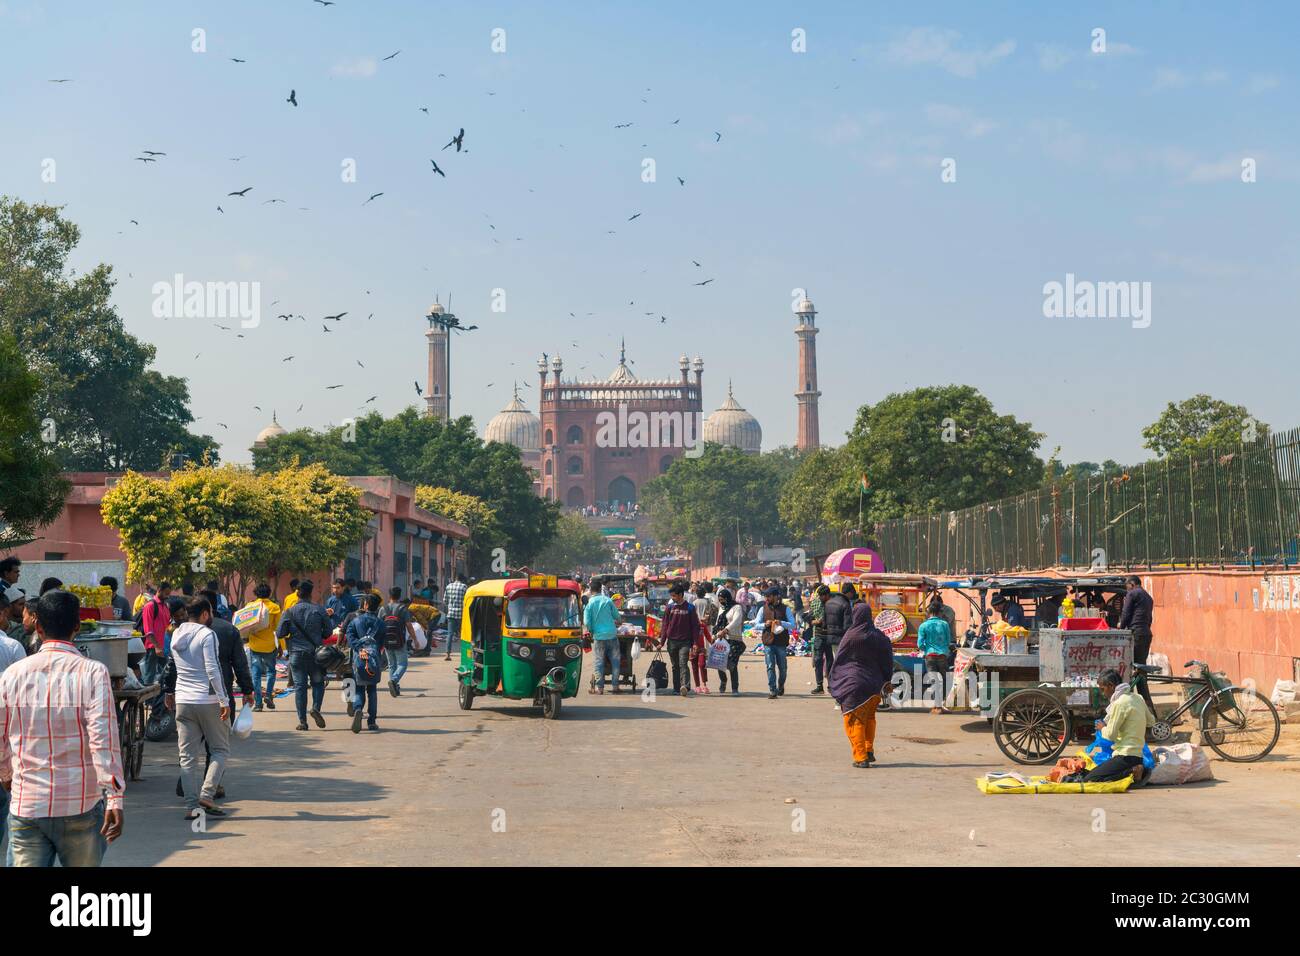 Meena Bazar menant à Jama Masjid (Mosquée Jama), Old Delhi, Delhi, Inde Banque D'Images